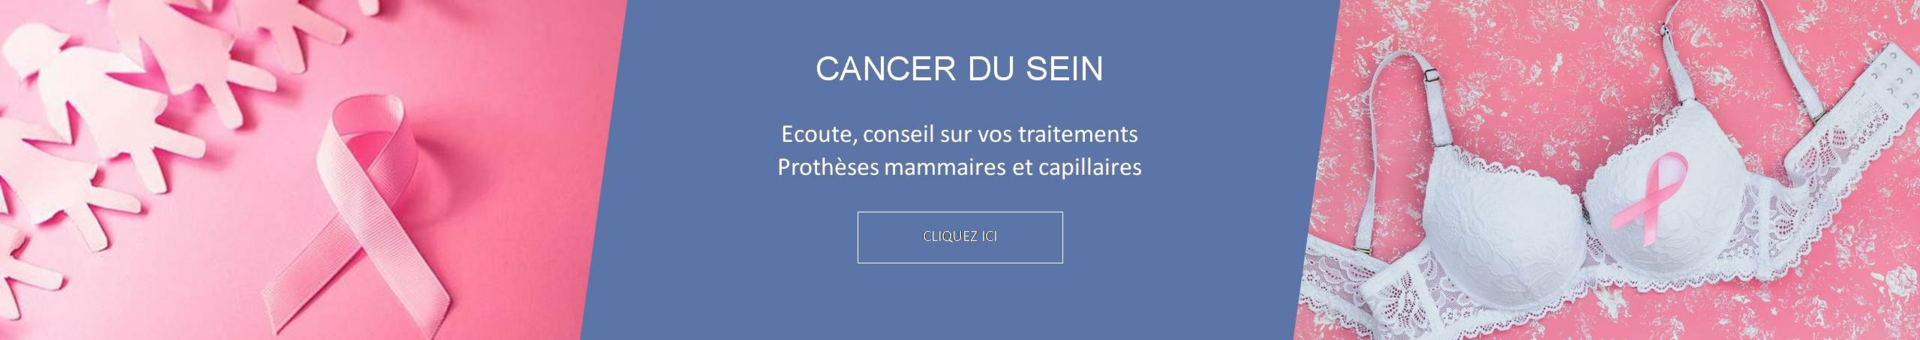 cancer sein-prothèse-mammaire-mastectomie-tumorectomie-aréole-coloris-adaptés-carnation-peau-adhérente-silicone-bain-maillot-lingerie-chirurgie-esthetique-silima-anita